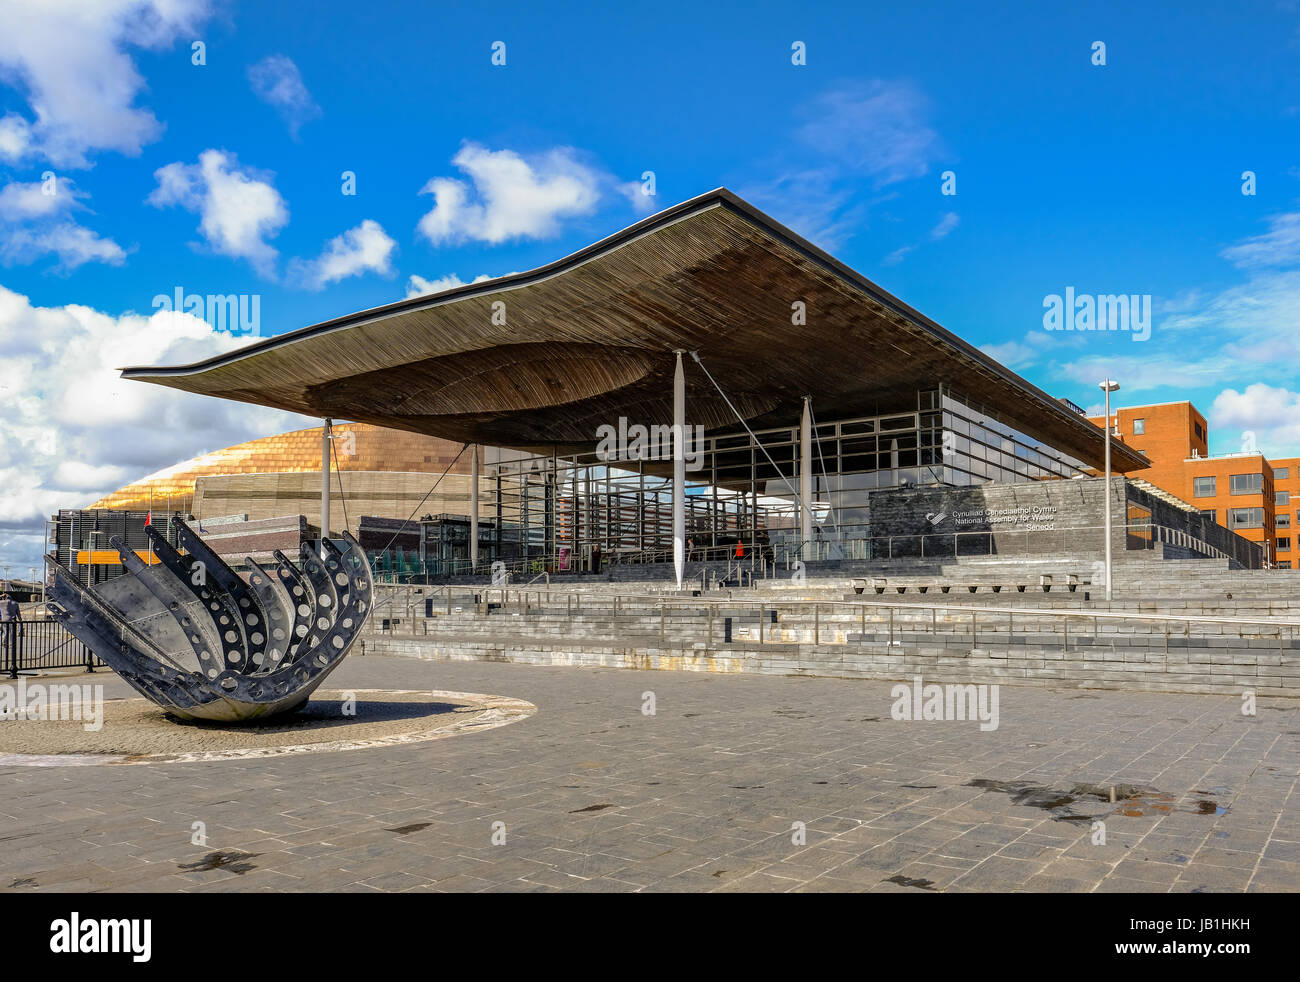 Bucht von Cardiff, Cardiff, Wales - 20. Mai 2017: Sinedd, Gebäude der Nationalversammlung.  Vorderansicht mit Skulptur im Vordergrund. Stockfoto